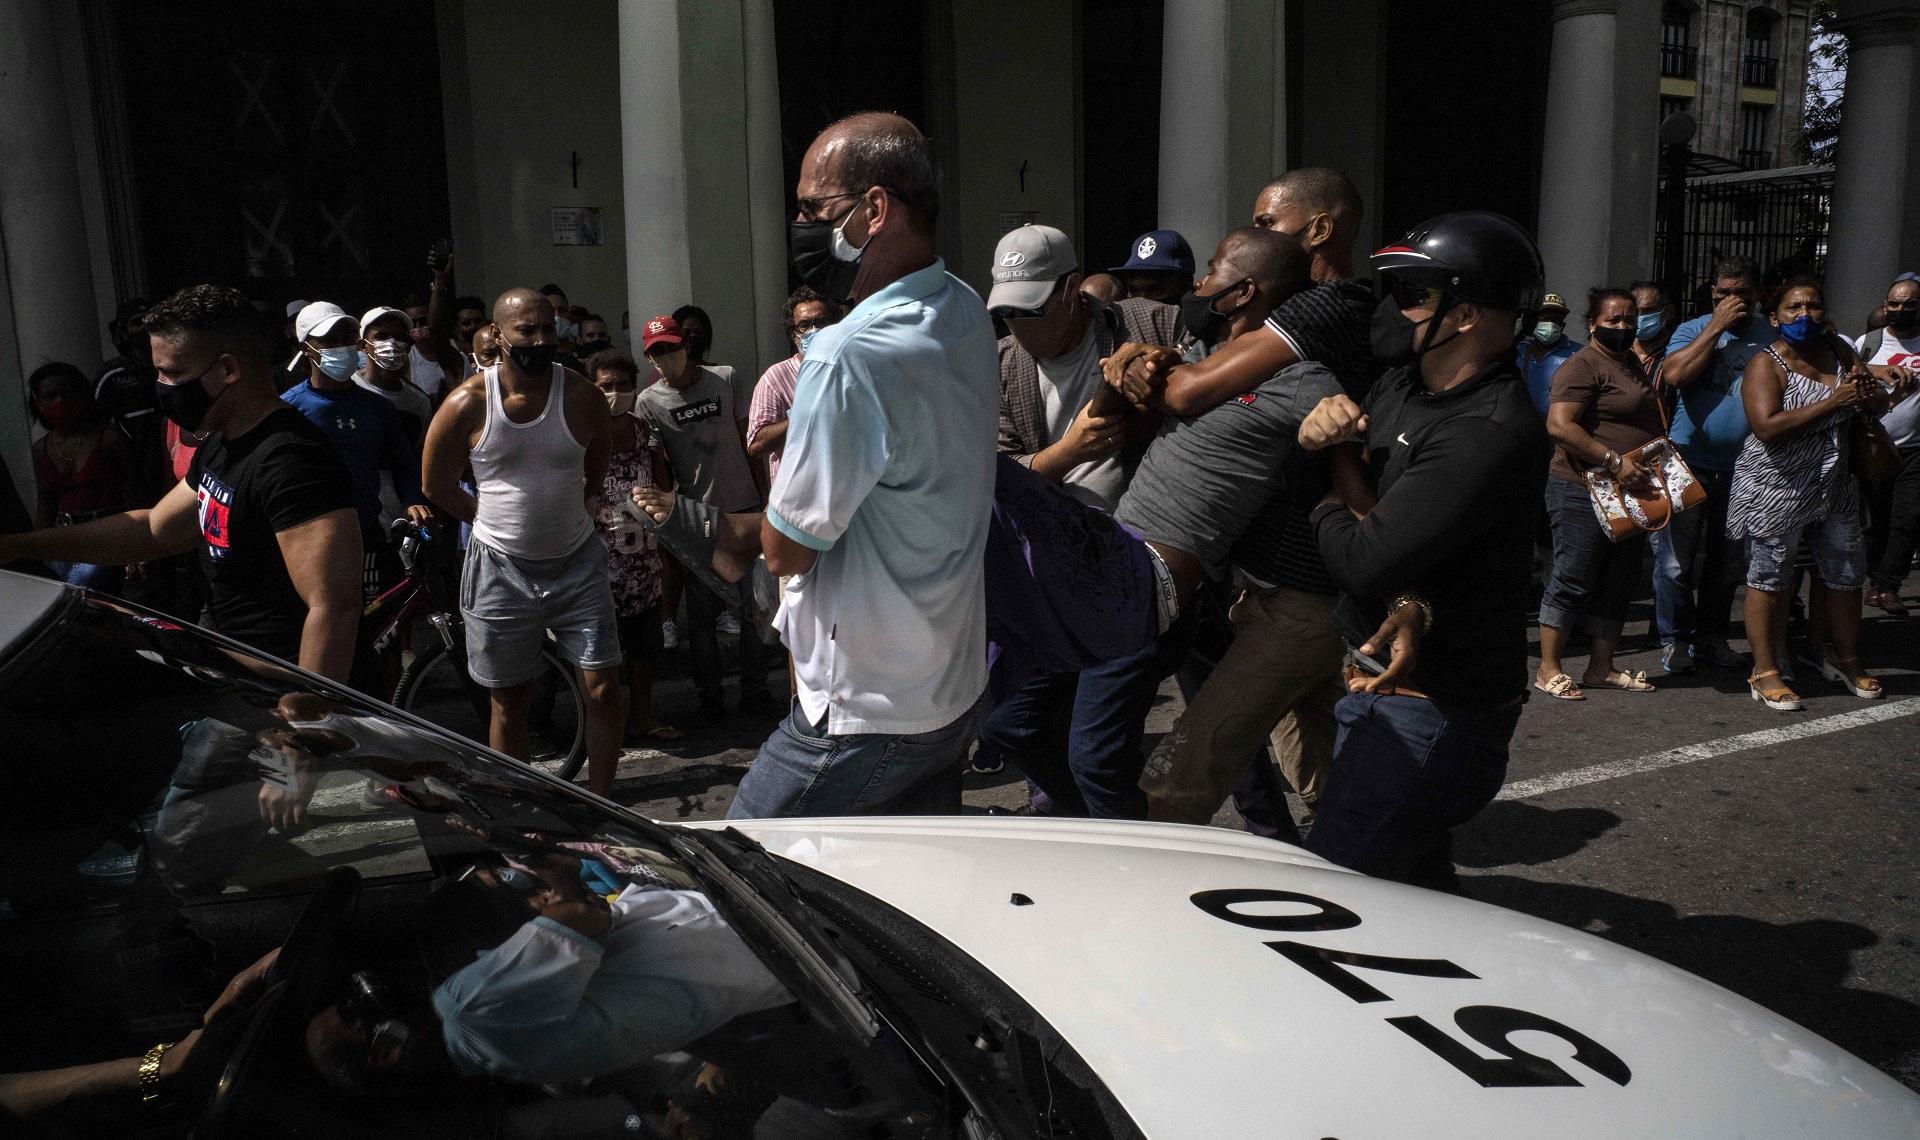 La policía detiene a un manifestante antigubernamental durante una protesta en La Habana, Cuba, el domingo 11 de julio de 2021. Cientos de manifestantes salieron a las calles en varias ciudades de Cuba para protestar contra la actual escasez de alimentos y los precios elevados de los productos en medio de la crisis por la pandemia del nuevo coronavirus. (AP Foto/Ramón Espinosa)